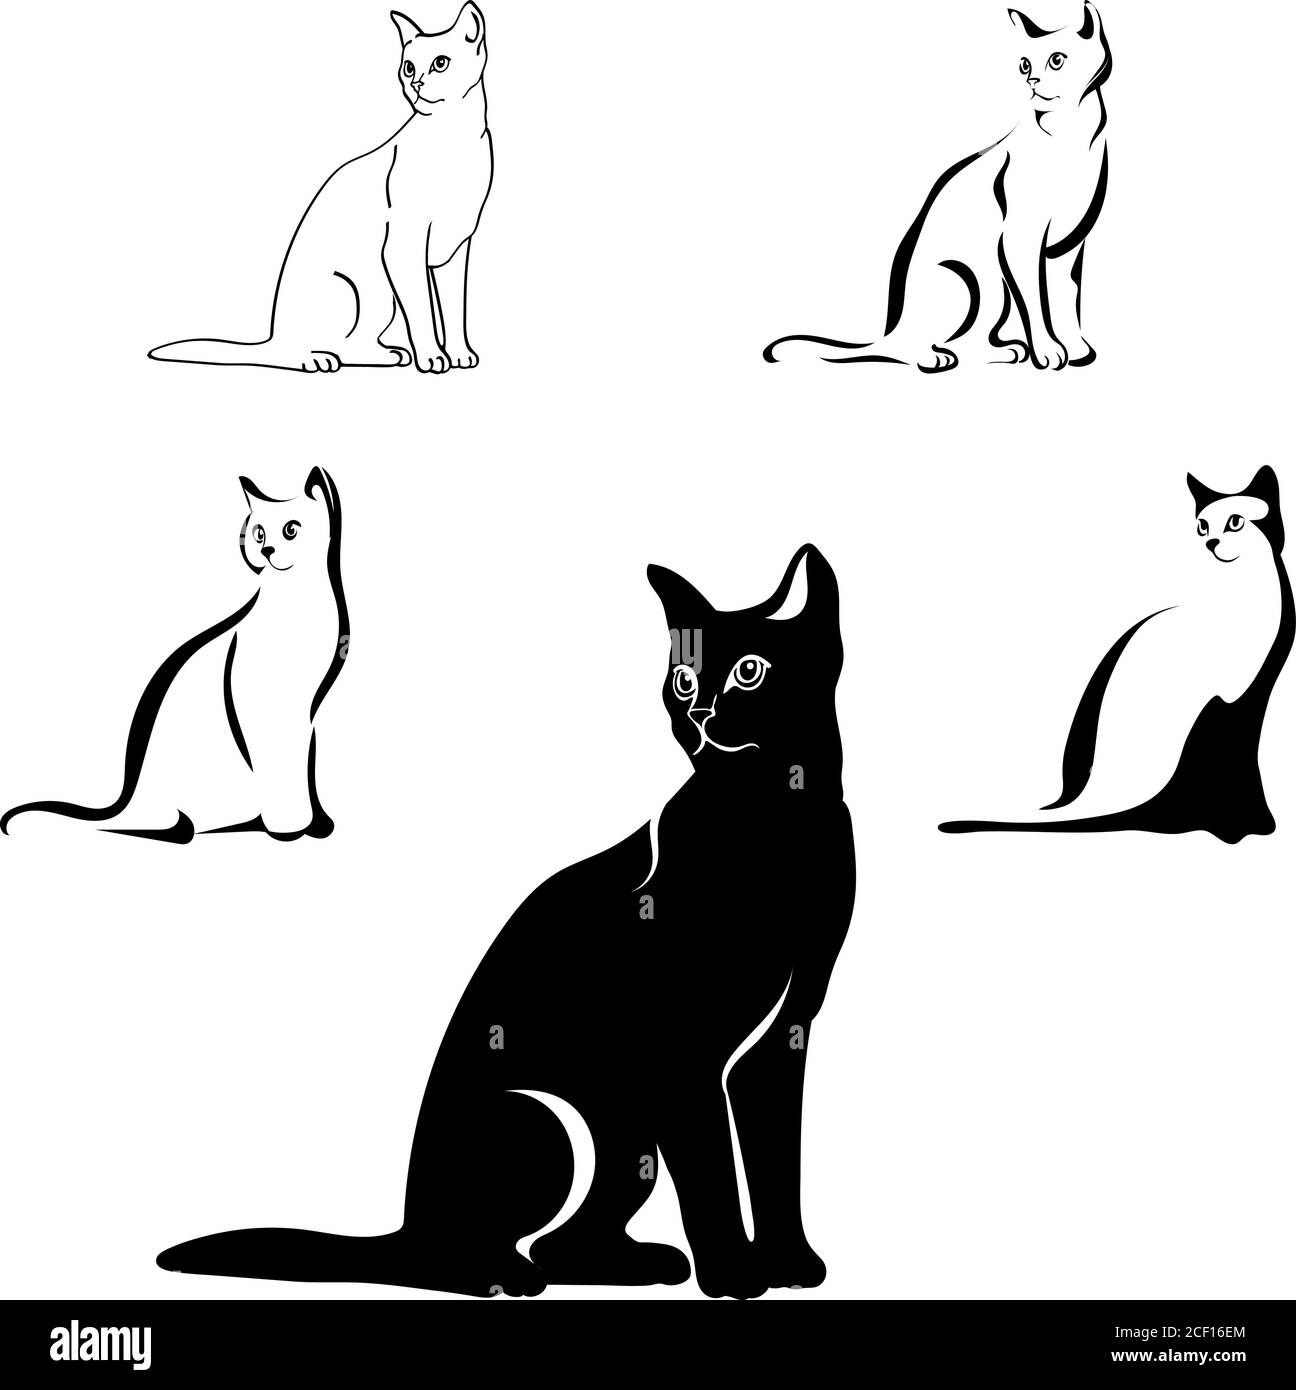 Katzen schwarzes Bild in verschiedenen Positionen, Katze sitzend, liegend, gehend, spielend, Vektor, schwarz, isoliert, weiß, gesetzt, Hintergrund, Umriss, Tier Stock Vektor